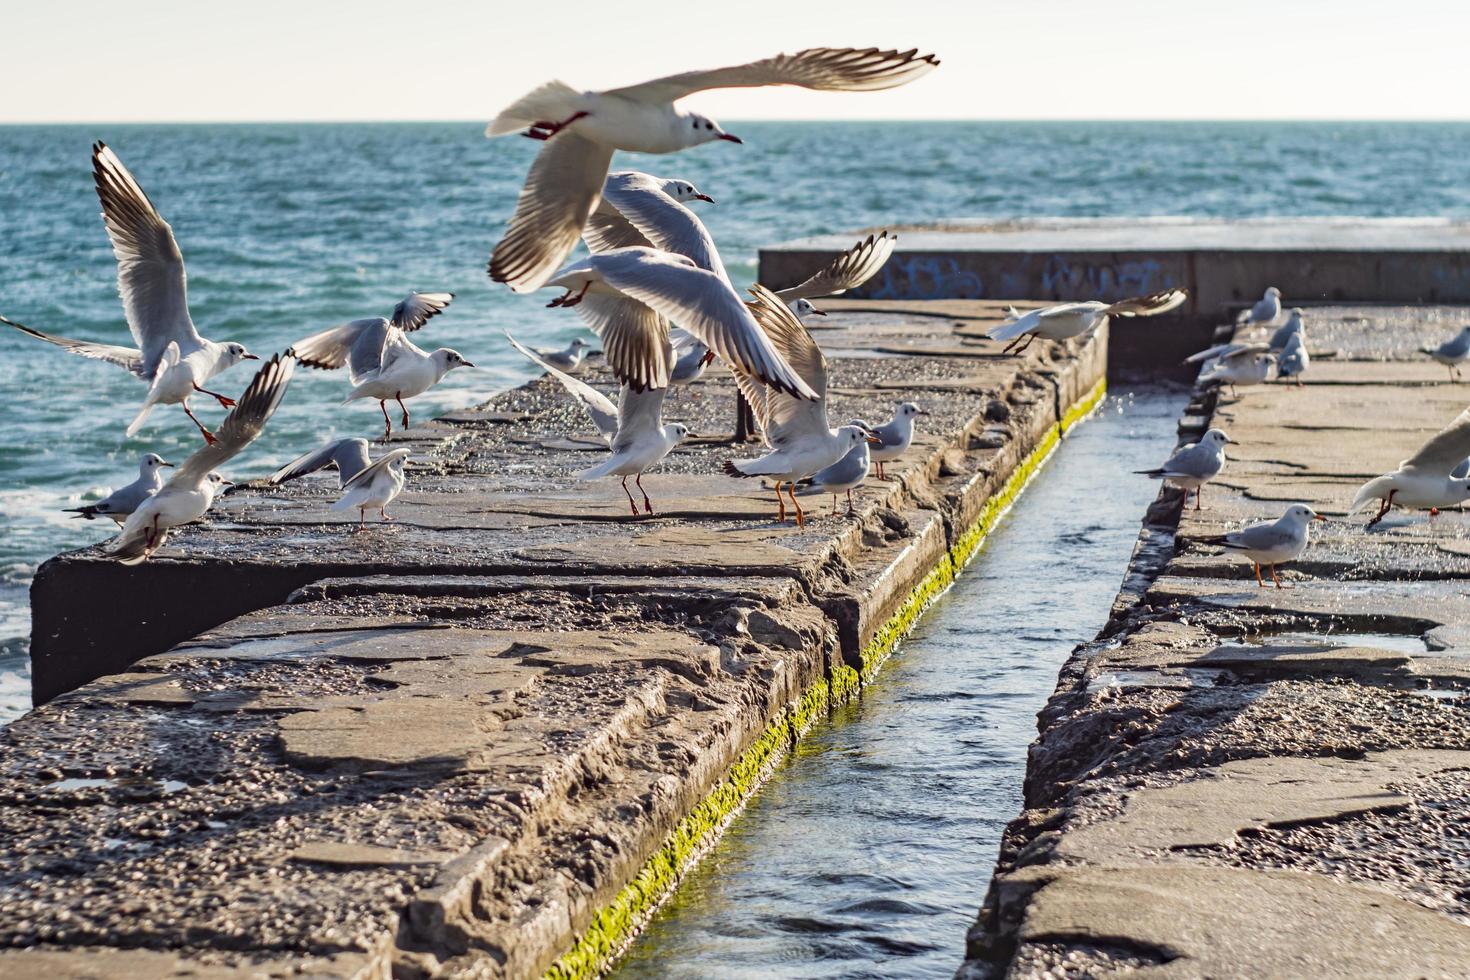 gaivotas voam sobre o cais no mar foto